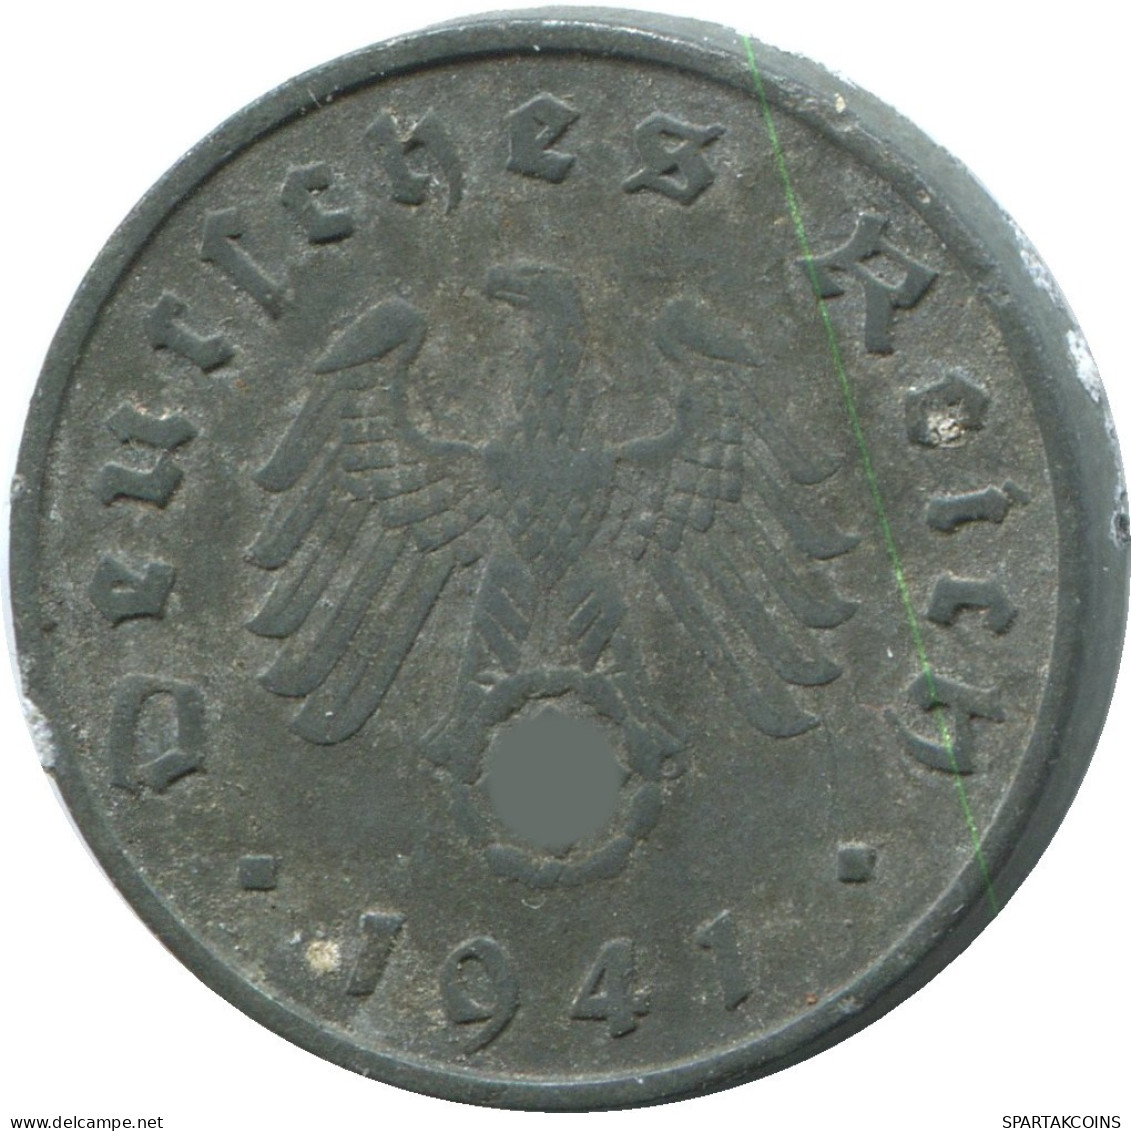 10 REICHSPFENNIG 1941 F ALEMANIA Moneda GERMANY #DE10443.5.E.A - 10 Reichspfennig